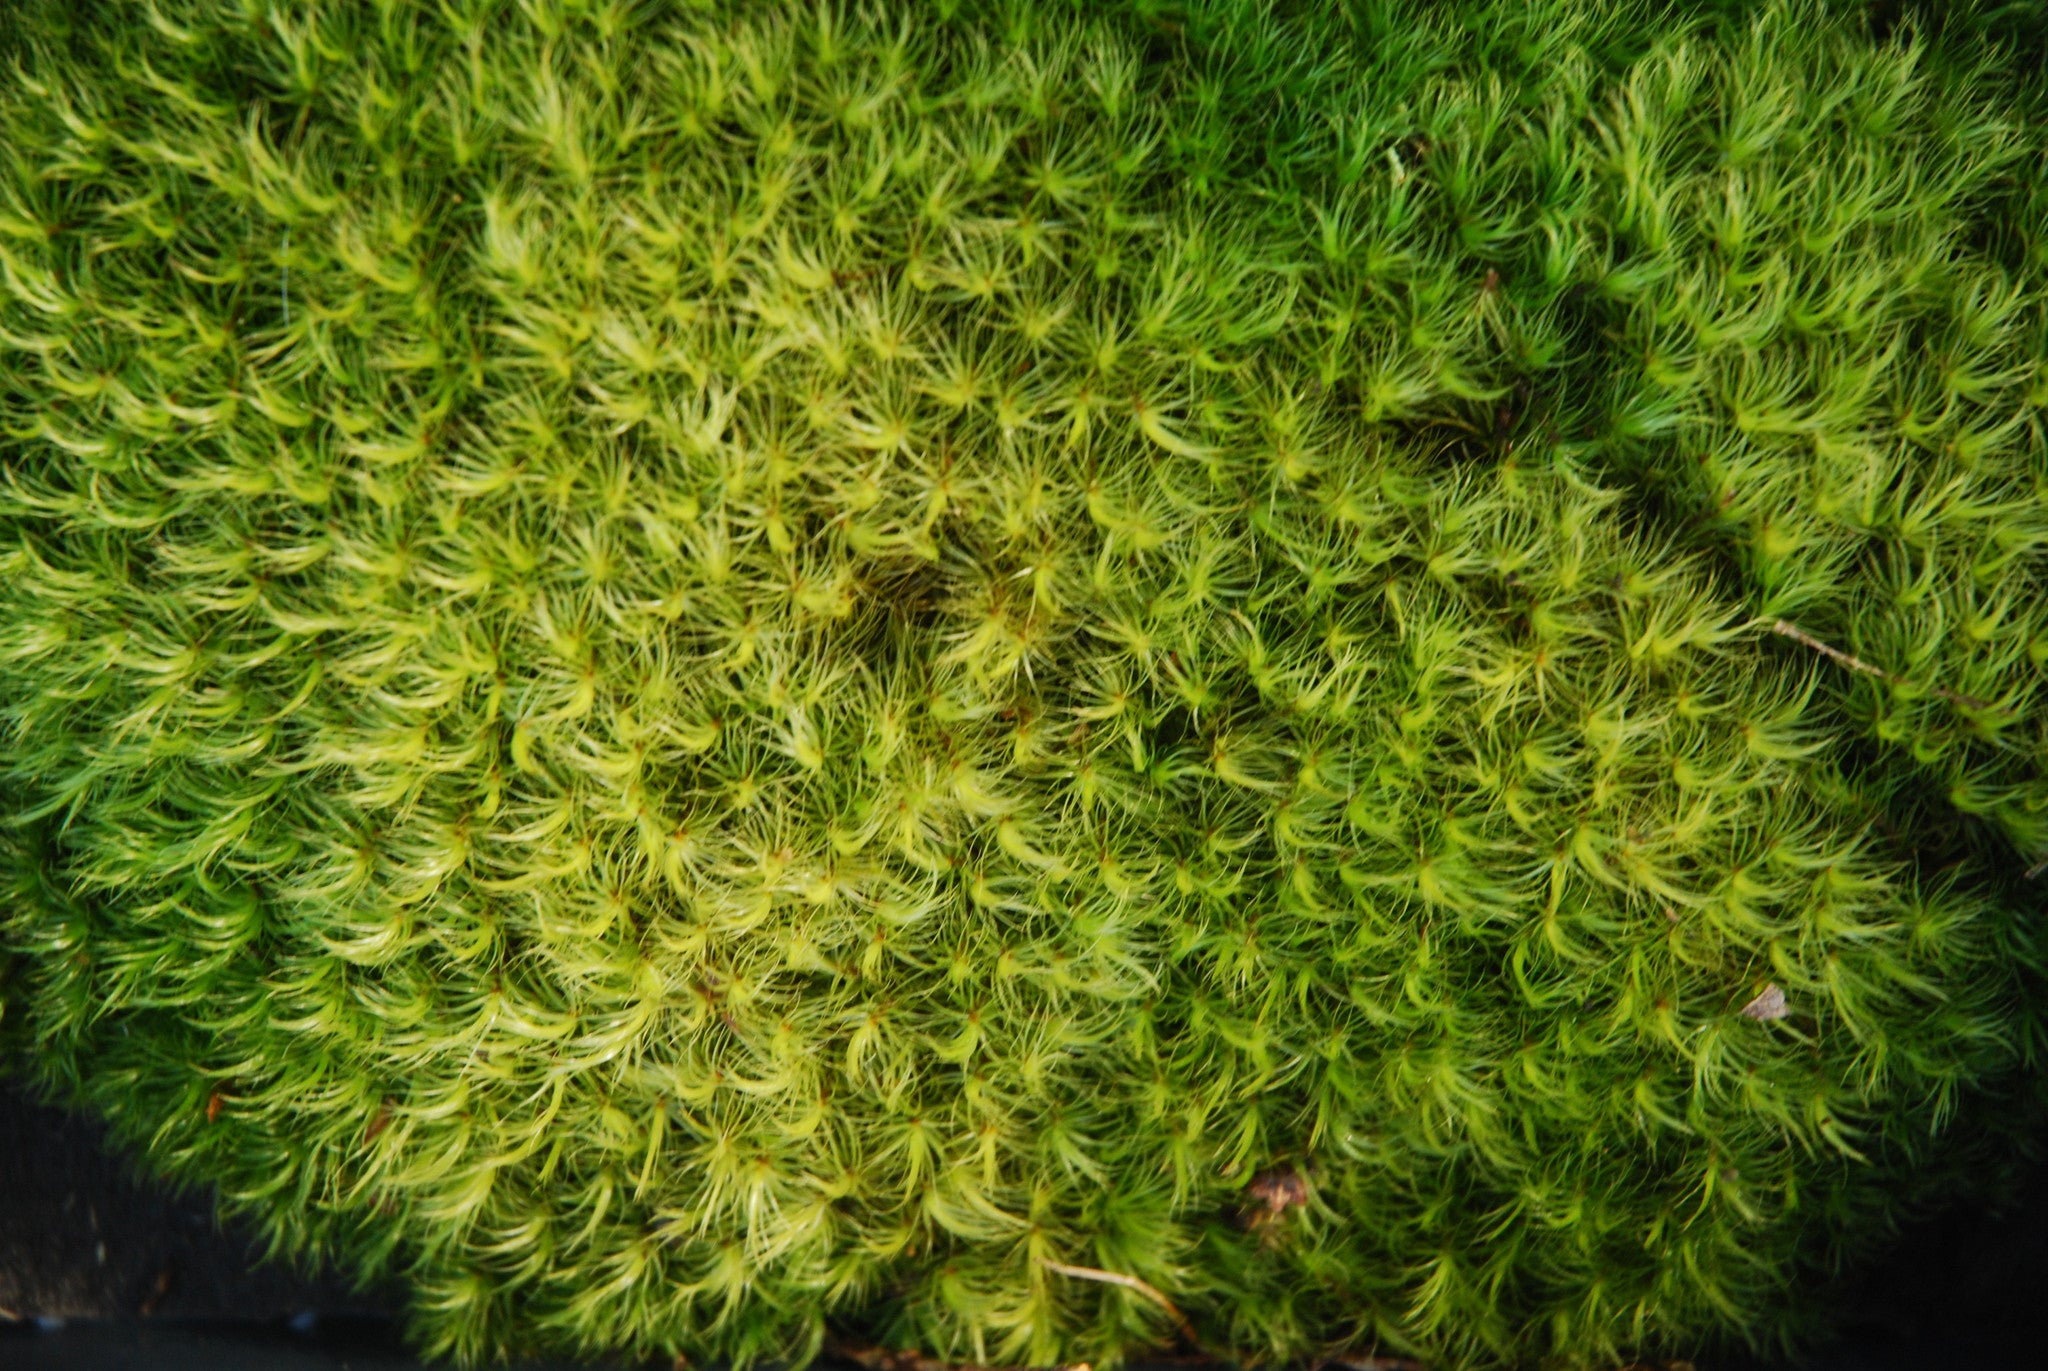 Dicranum (Pillow Moss), Living